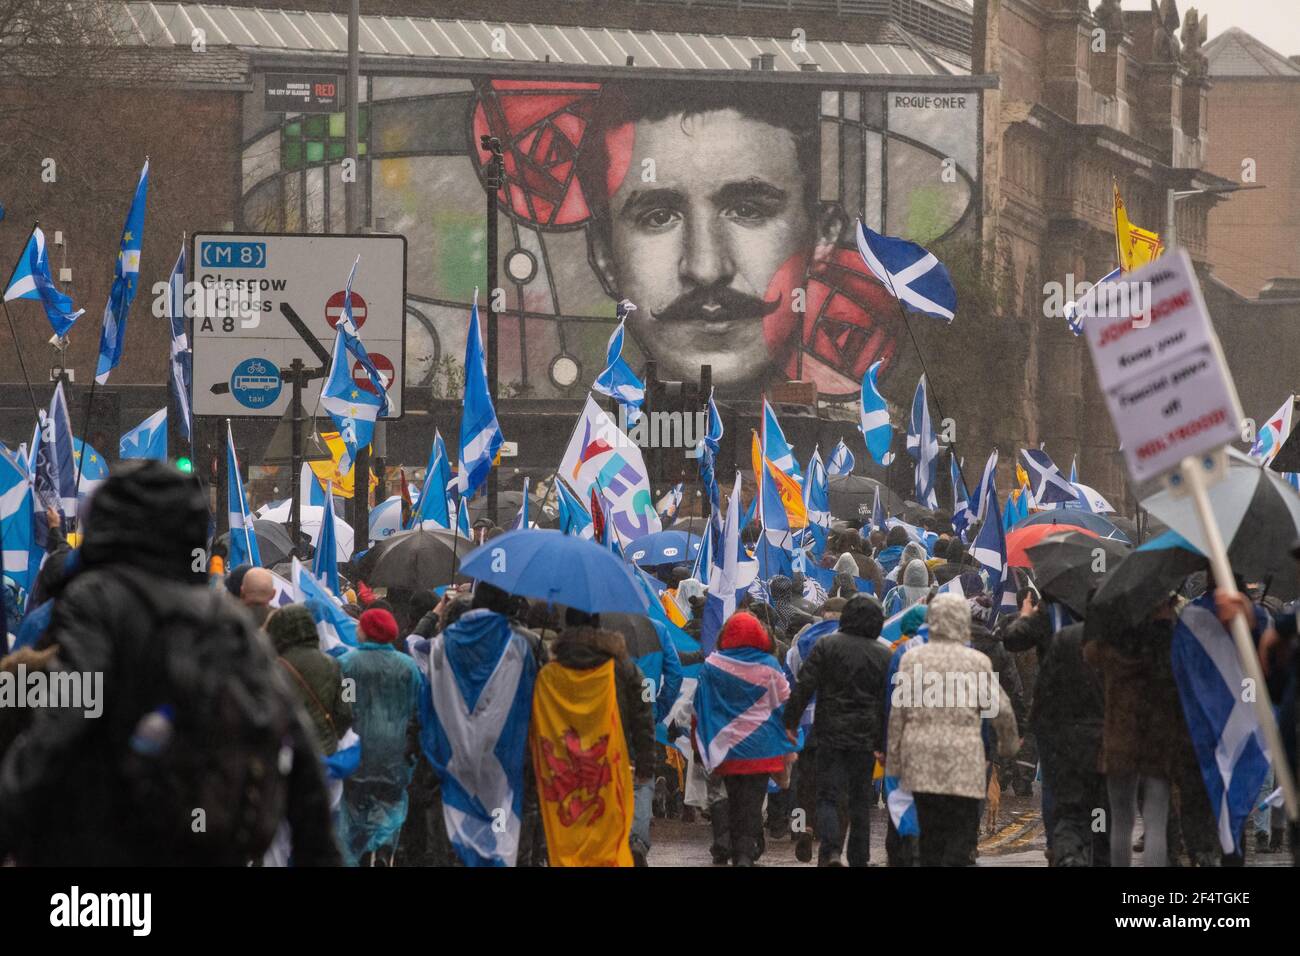 Les partisans écossais de l'indépendance défilent devant la fresque Rennie Mackintosh à Glasgow, Écosse, Royaume-Uni - janvier 2020 Banque D'Images